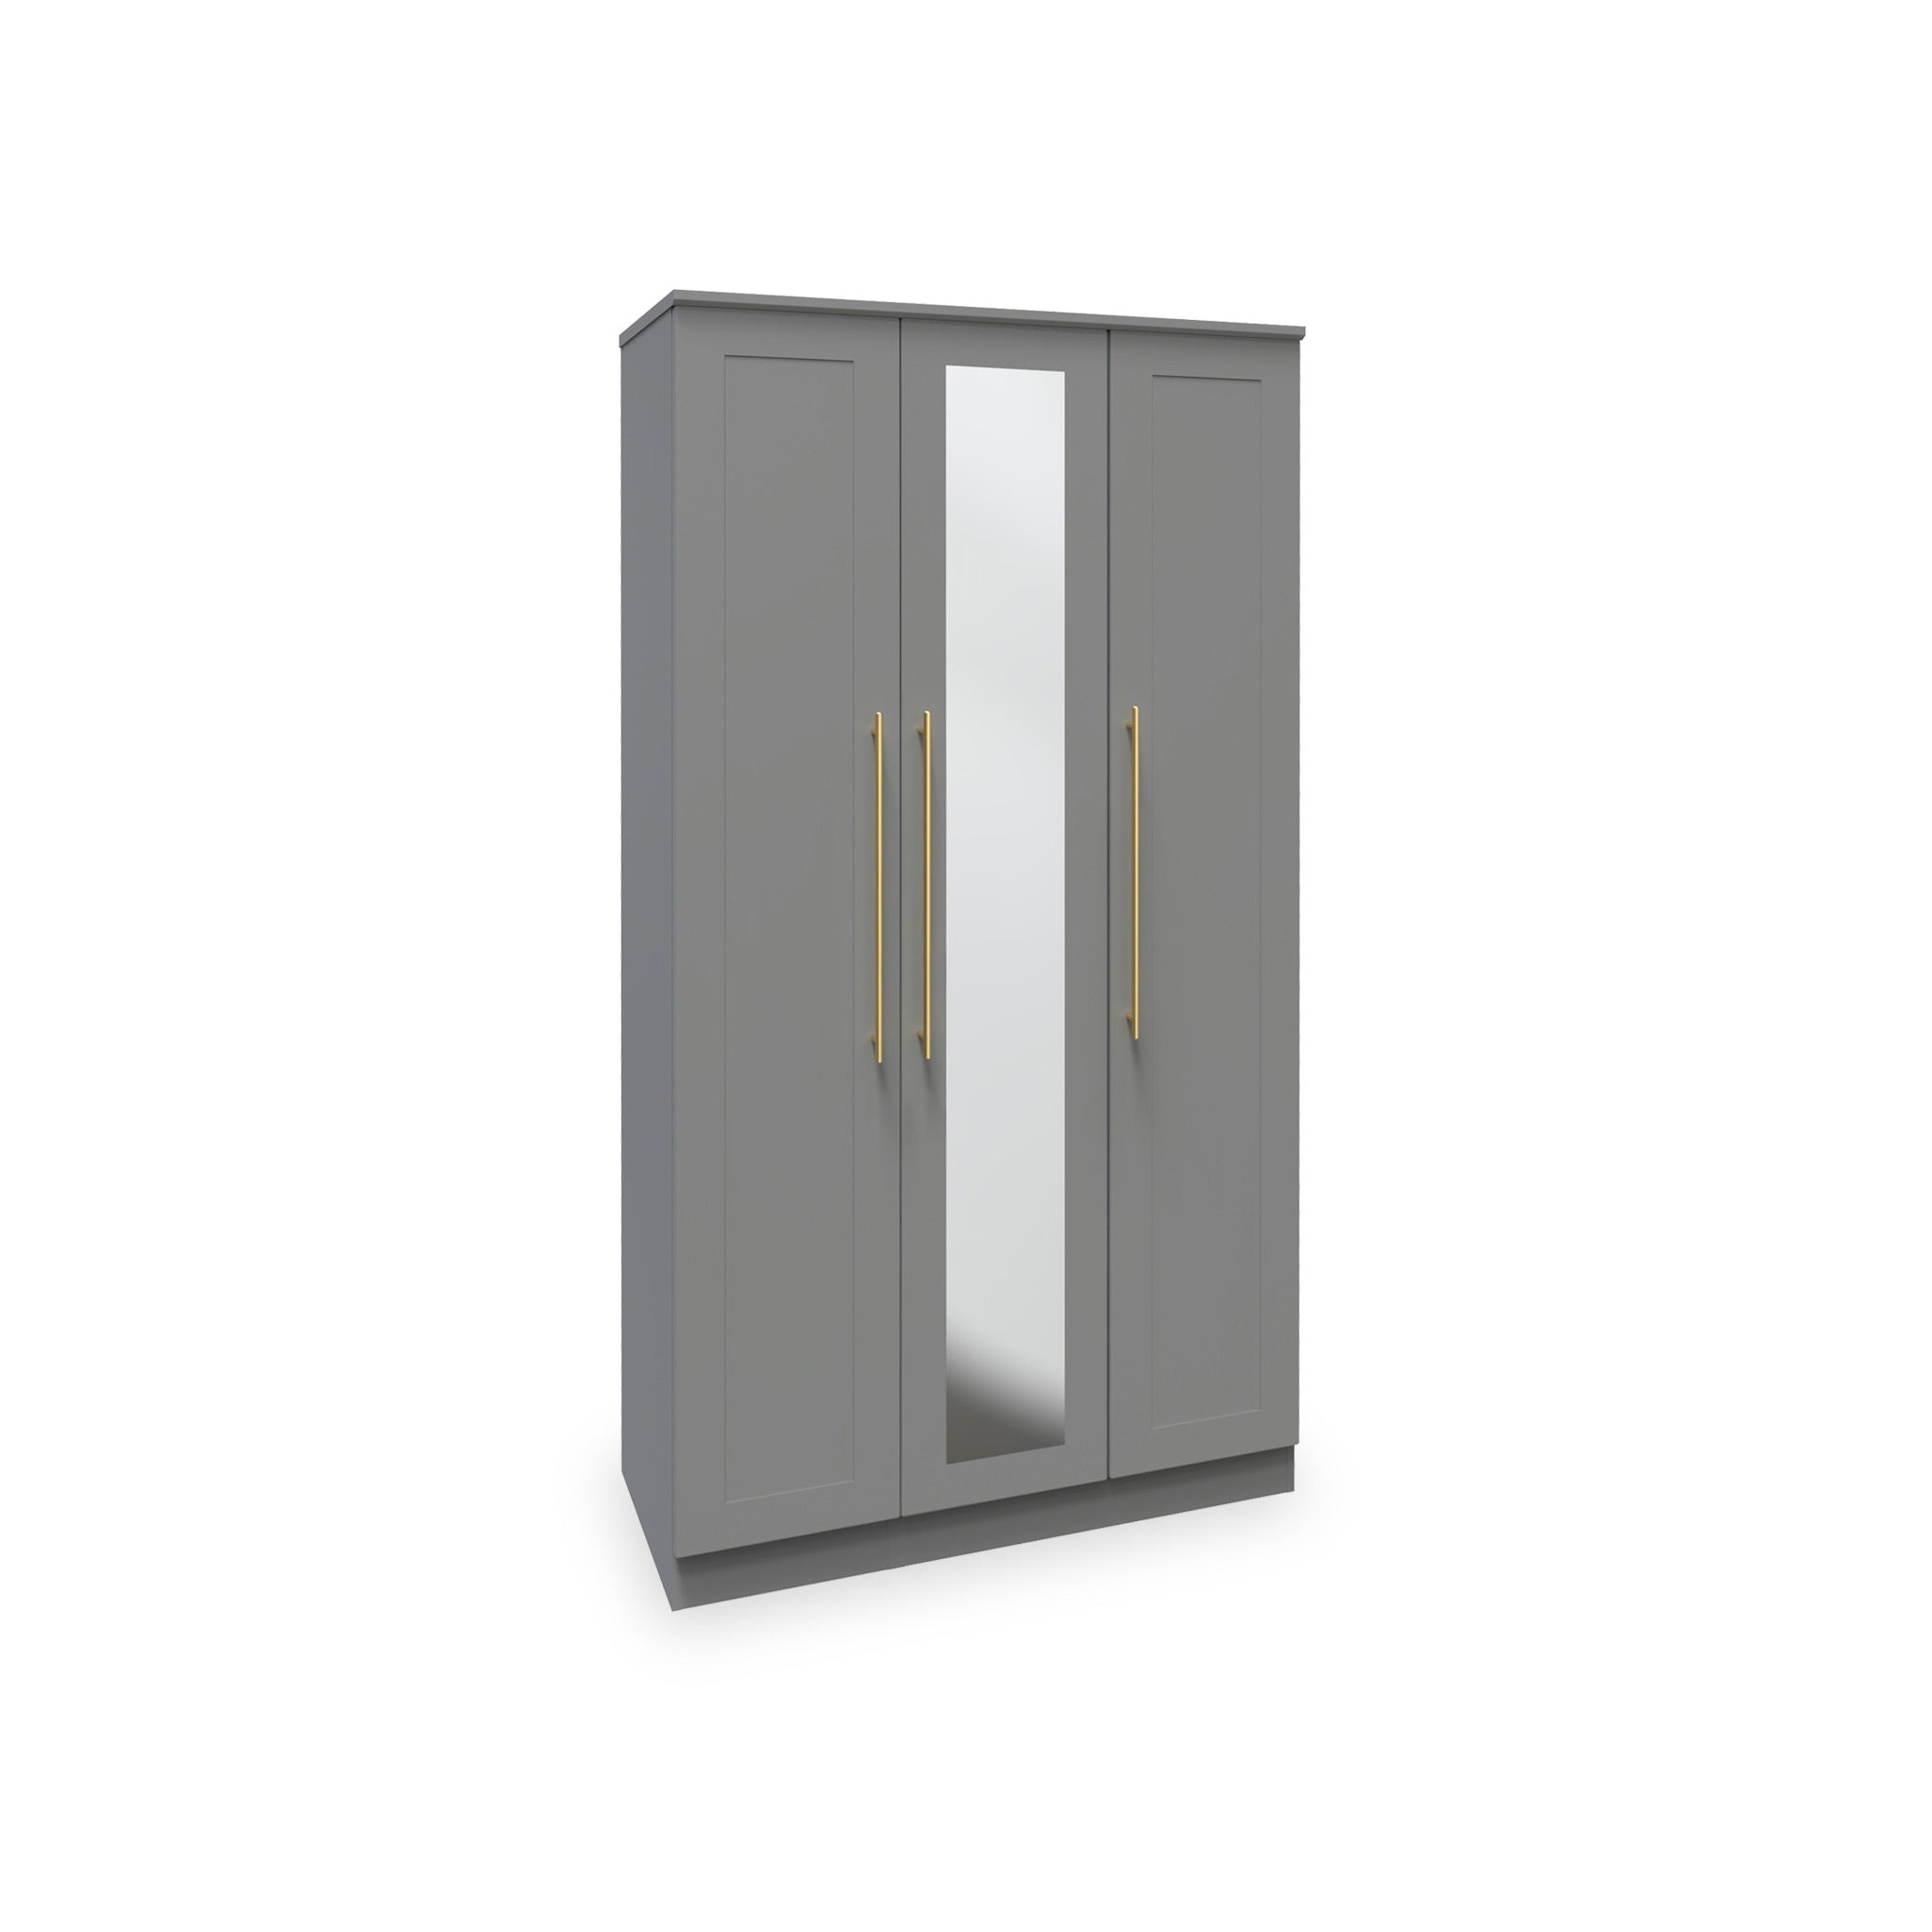 Bramham Contemporary Grey 3 Door Wardrobe With Mirror Roseland